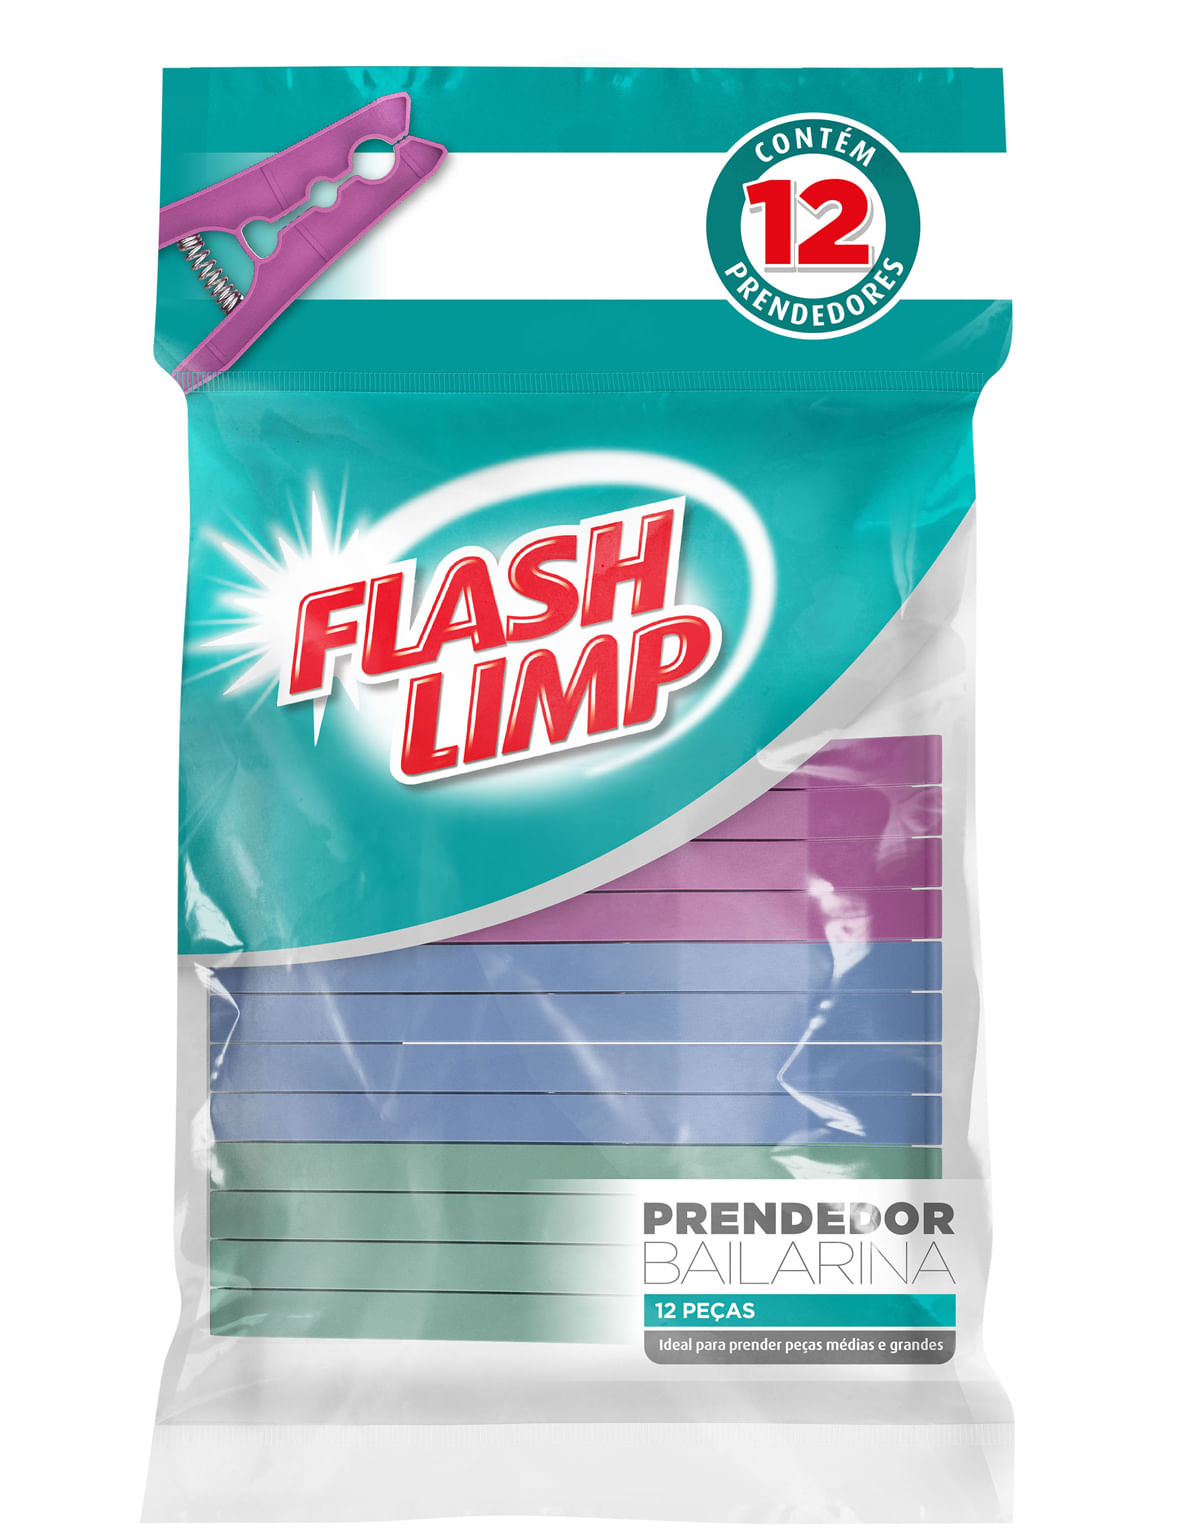 Conjunto 12 Prendedores Bailarina Flash Limp